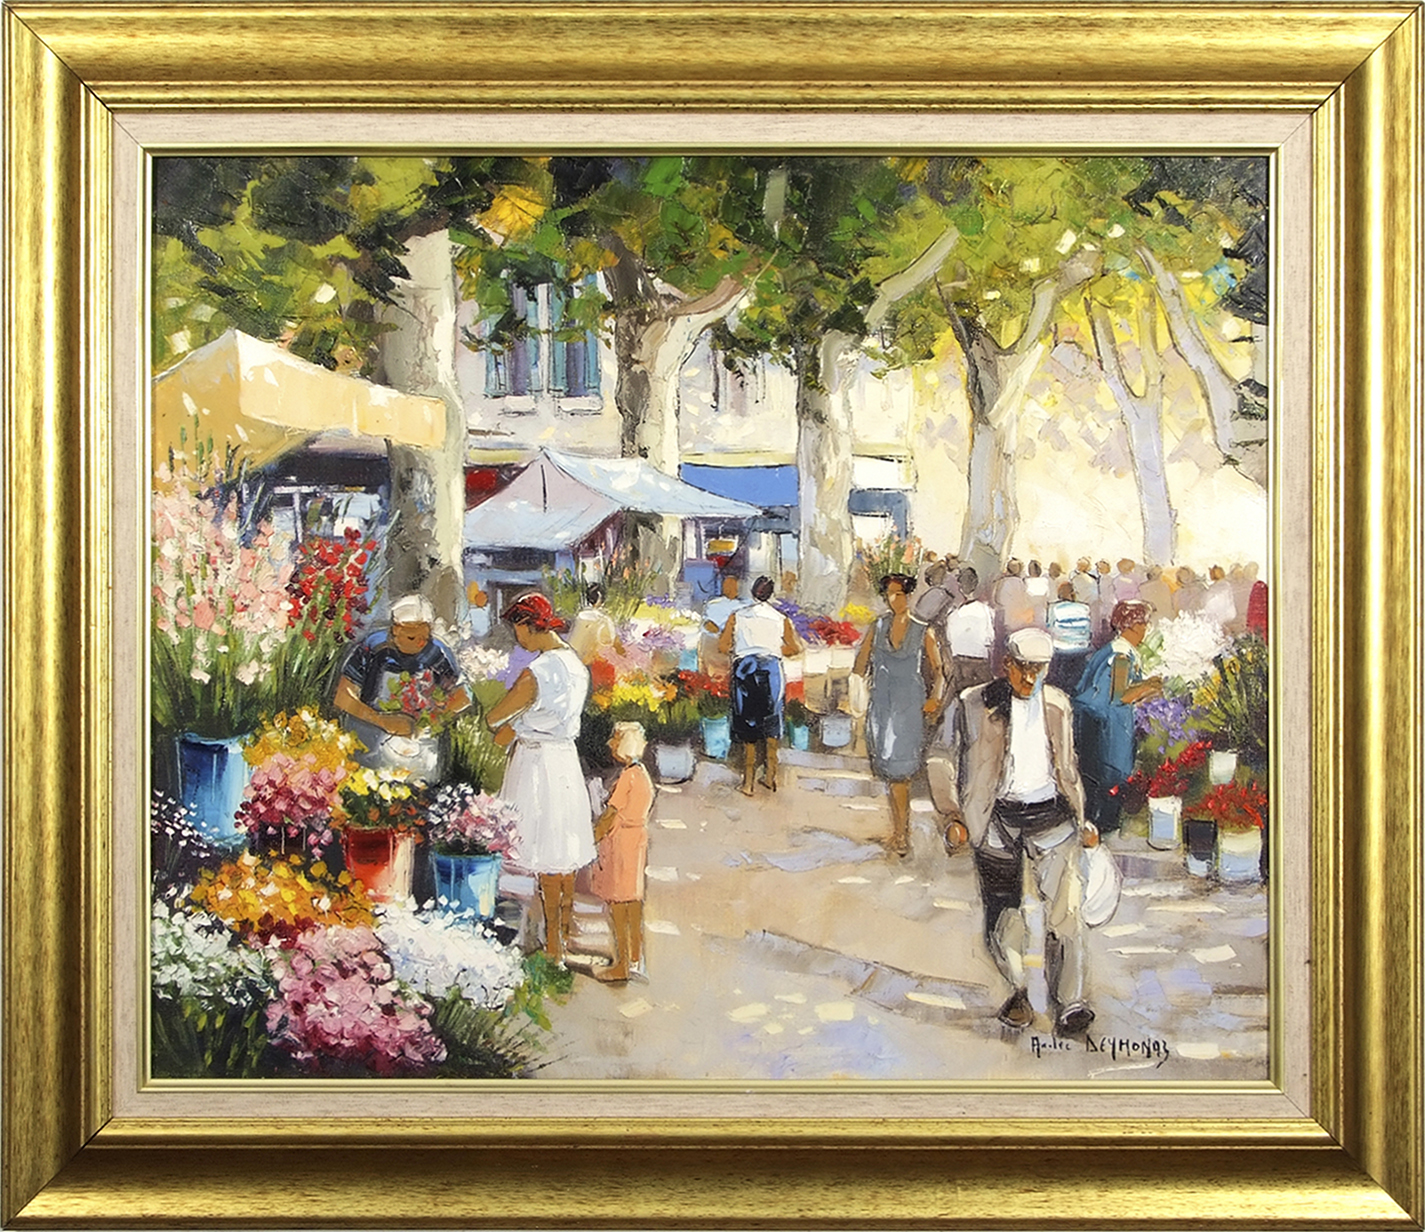 AR Andre Deymonaz (born 1946), "La Marche aux Fleurs", oil on canvas, signed lower right, 58 x 71cm